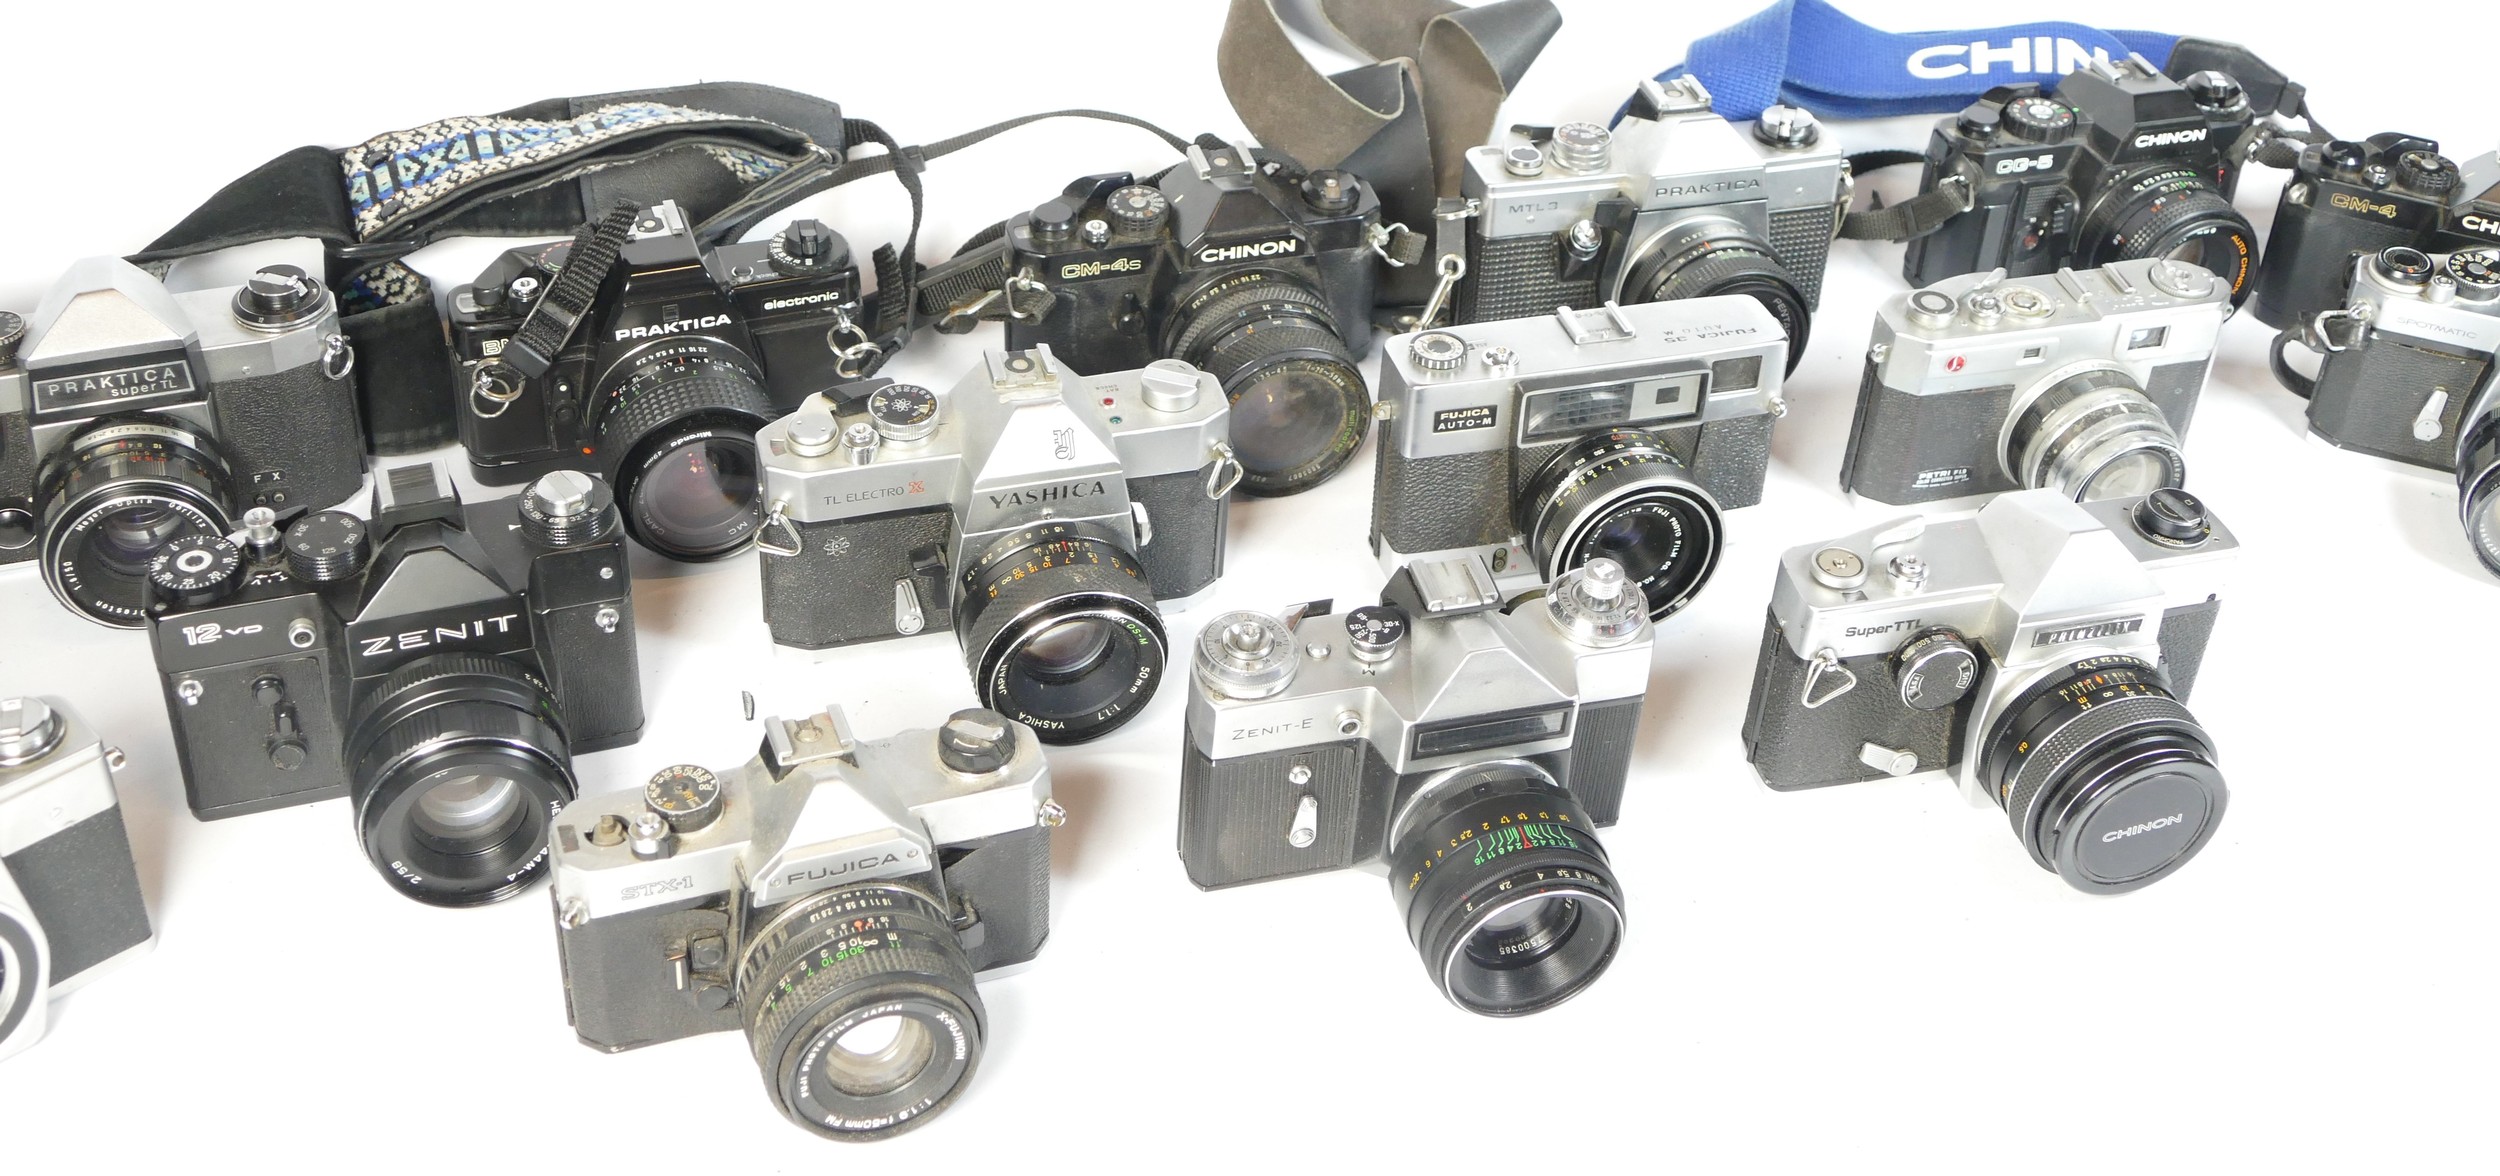 Twenty one SLR vintage film cameras to include a Praktica LB, a Fujica STX-1, a Chinon CM4S, and a - Image 2 of 2